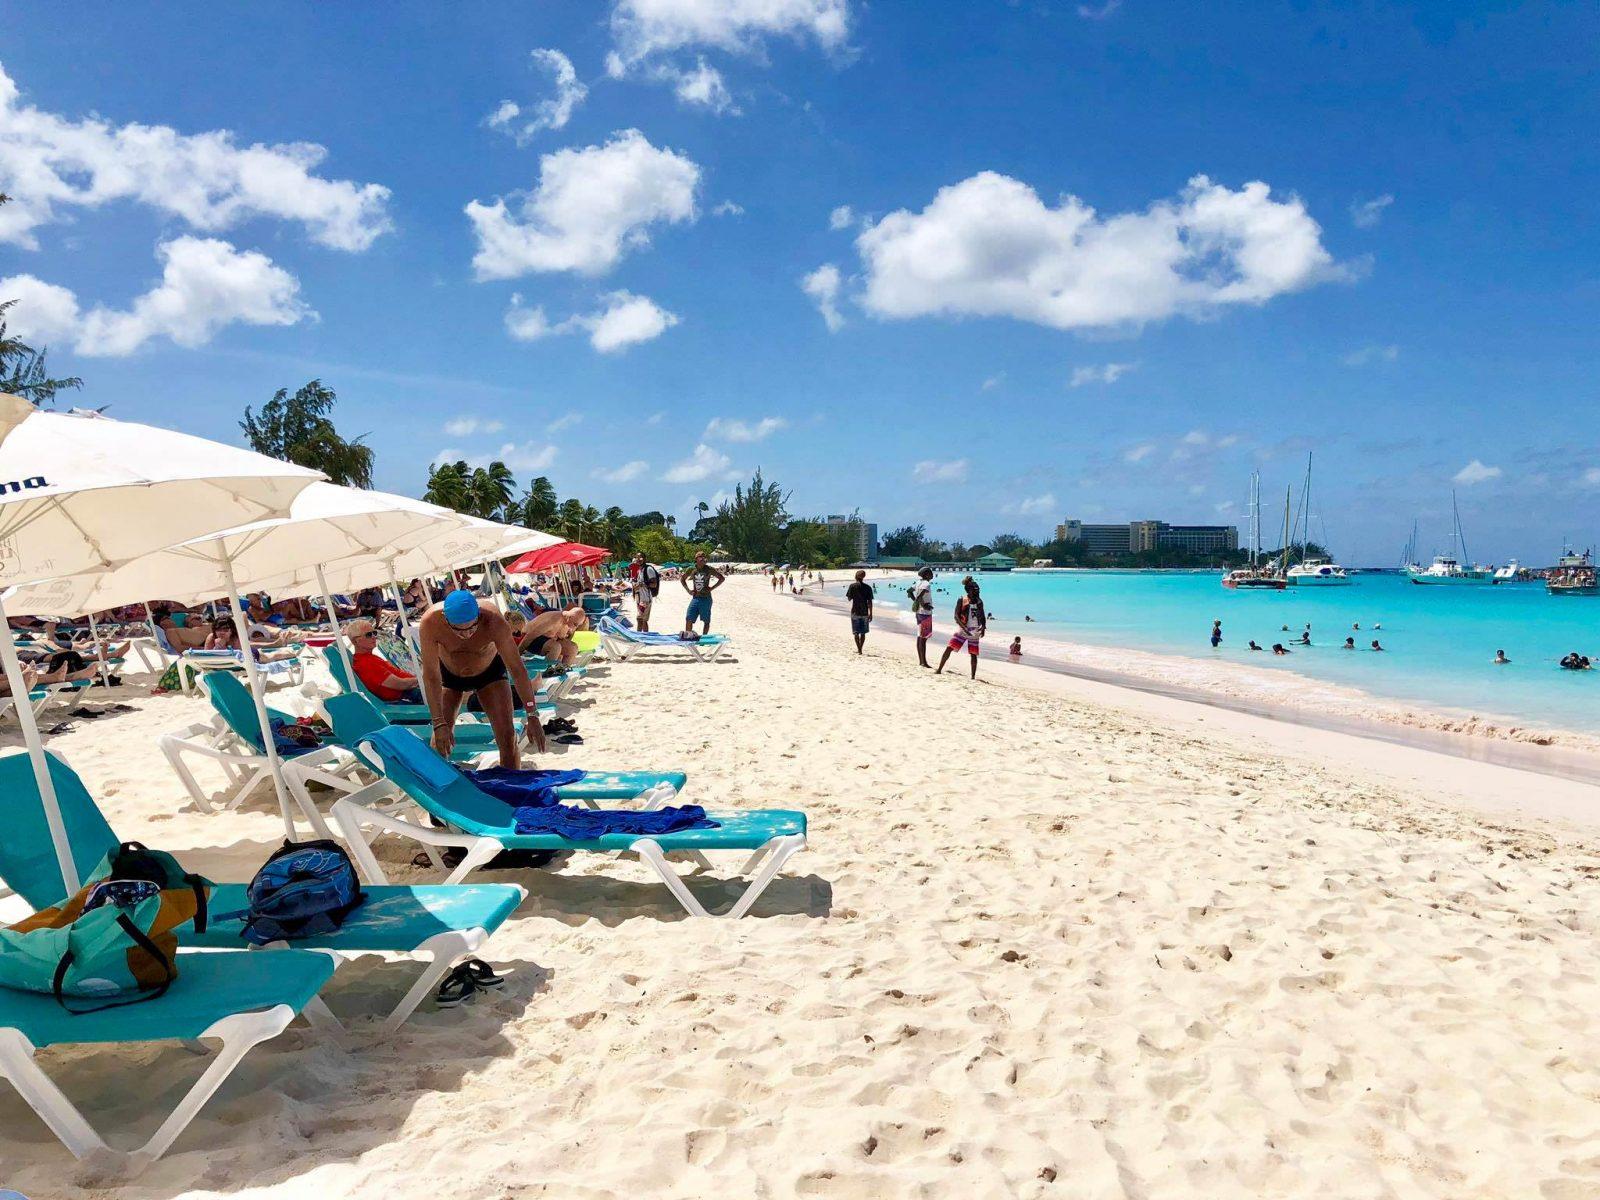 Barbados Vacation Guide